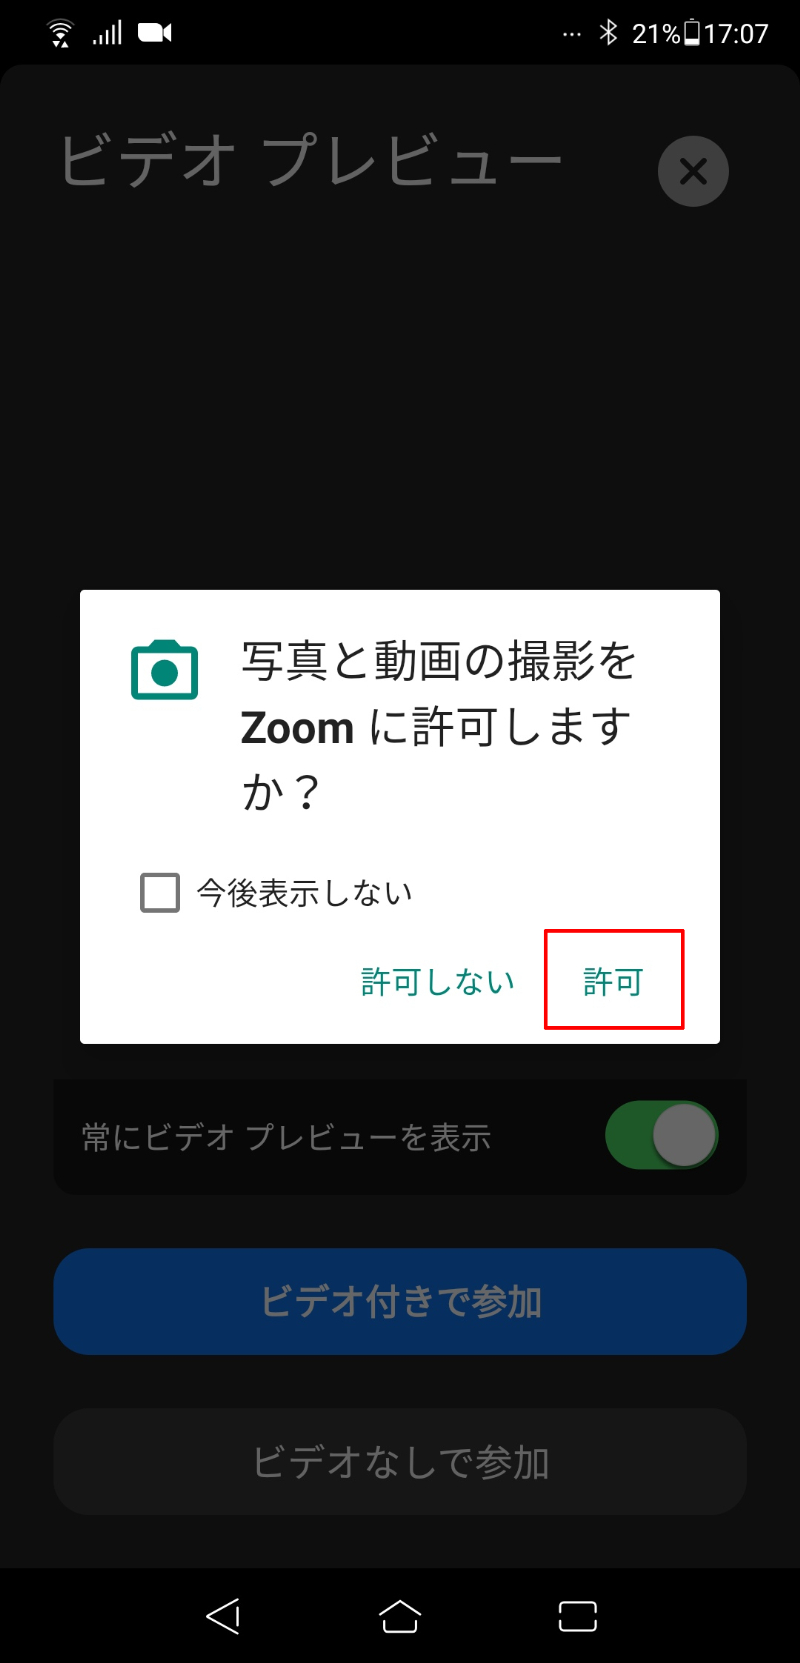 Zoomアプリ内で写真と動画またはカメラの使用を許可するポップアップが表示されますので、【許可】を押します。